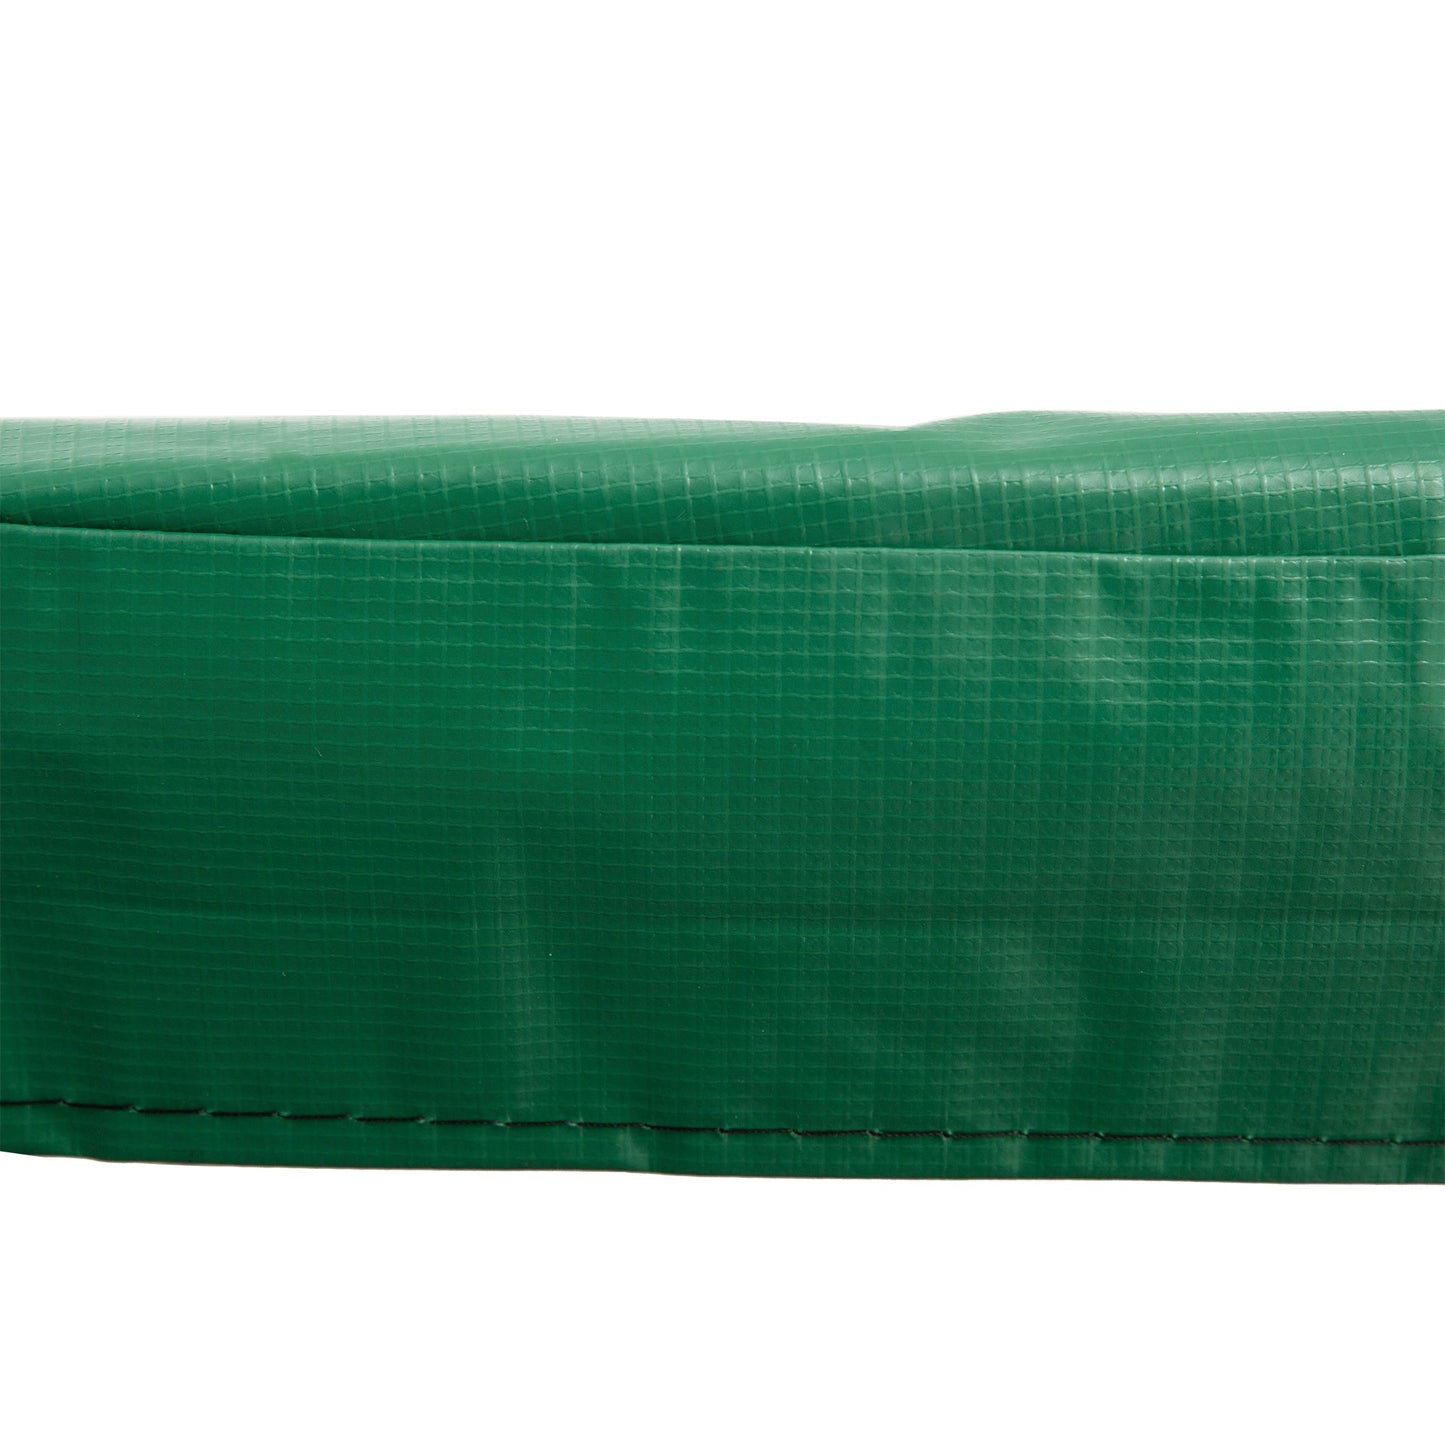 Φ10ft Trampoline Replacement Safety Pad Trampoline Pad Waterproof Spring Cover Green at Gallery Canada